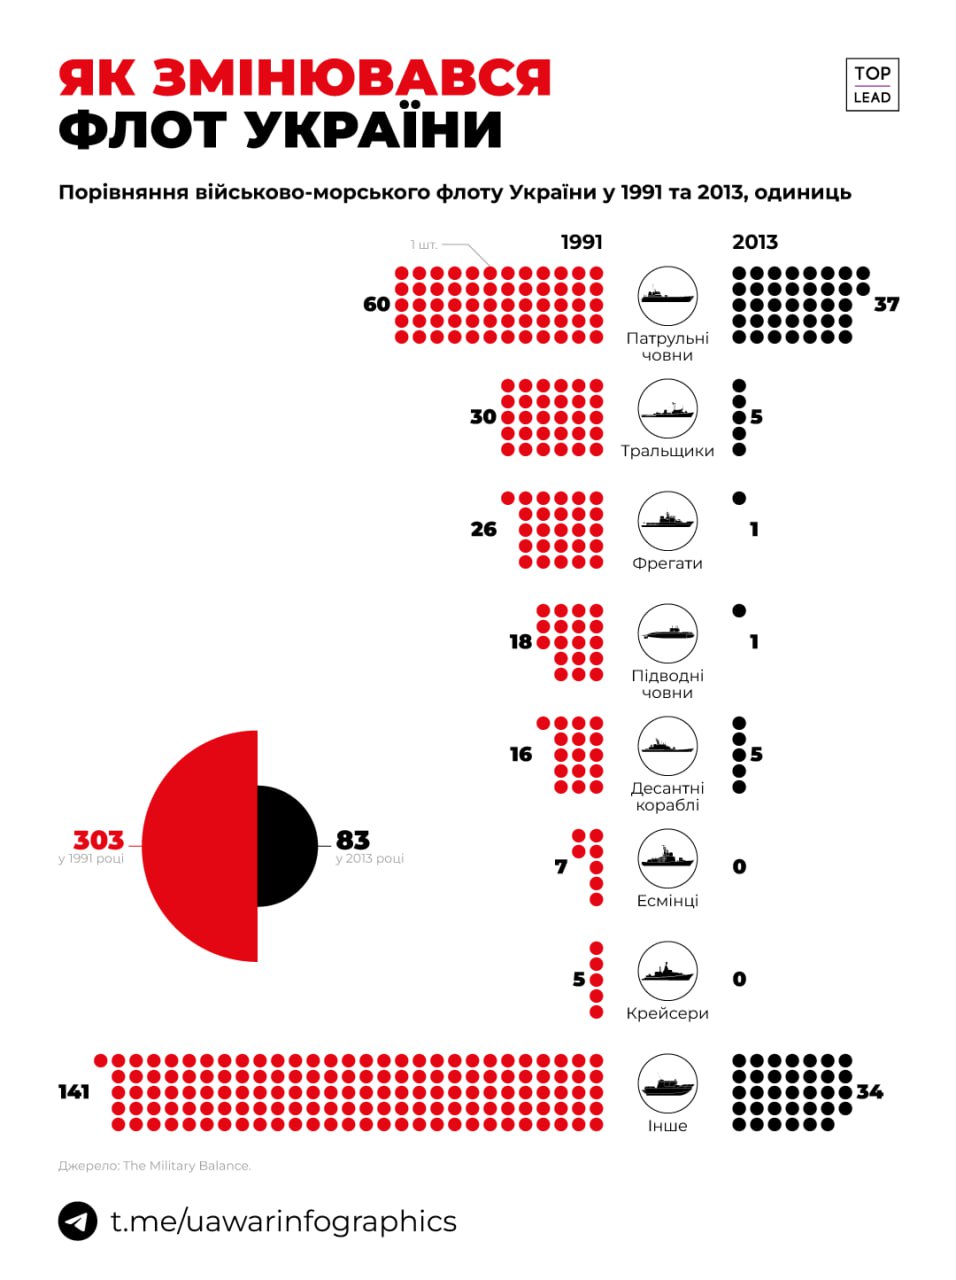 У 1991 Україна мала 18 підводних човнів, а загалом 303 одиниці флоту. У 2013 лише 83 одиниці